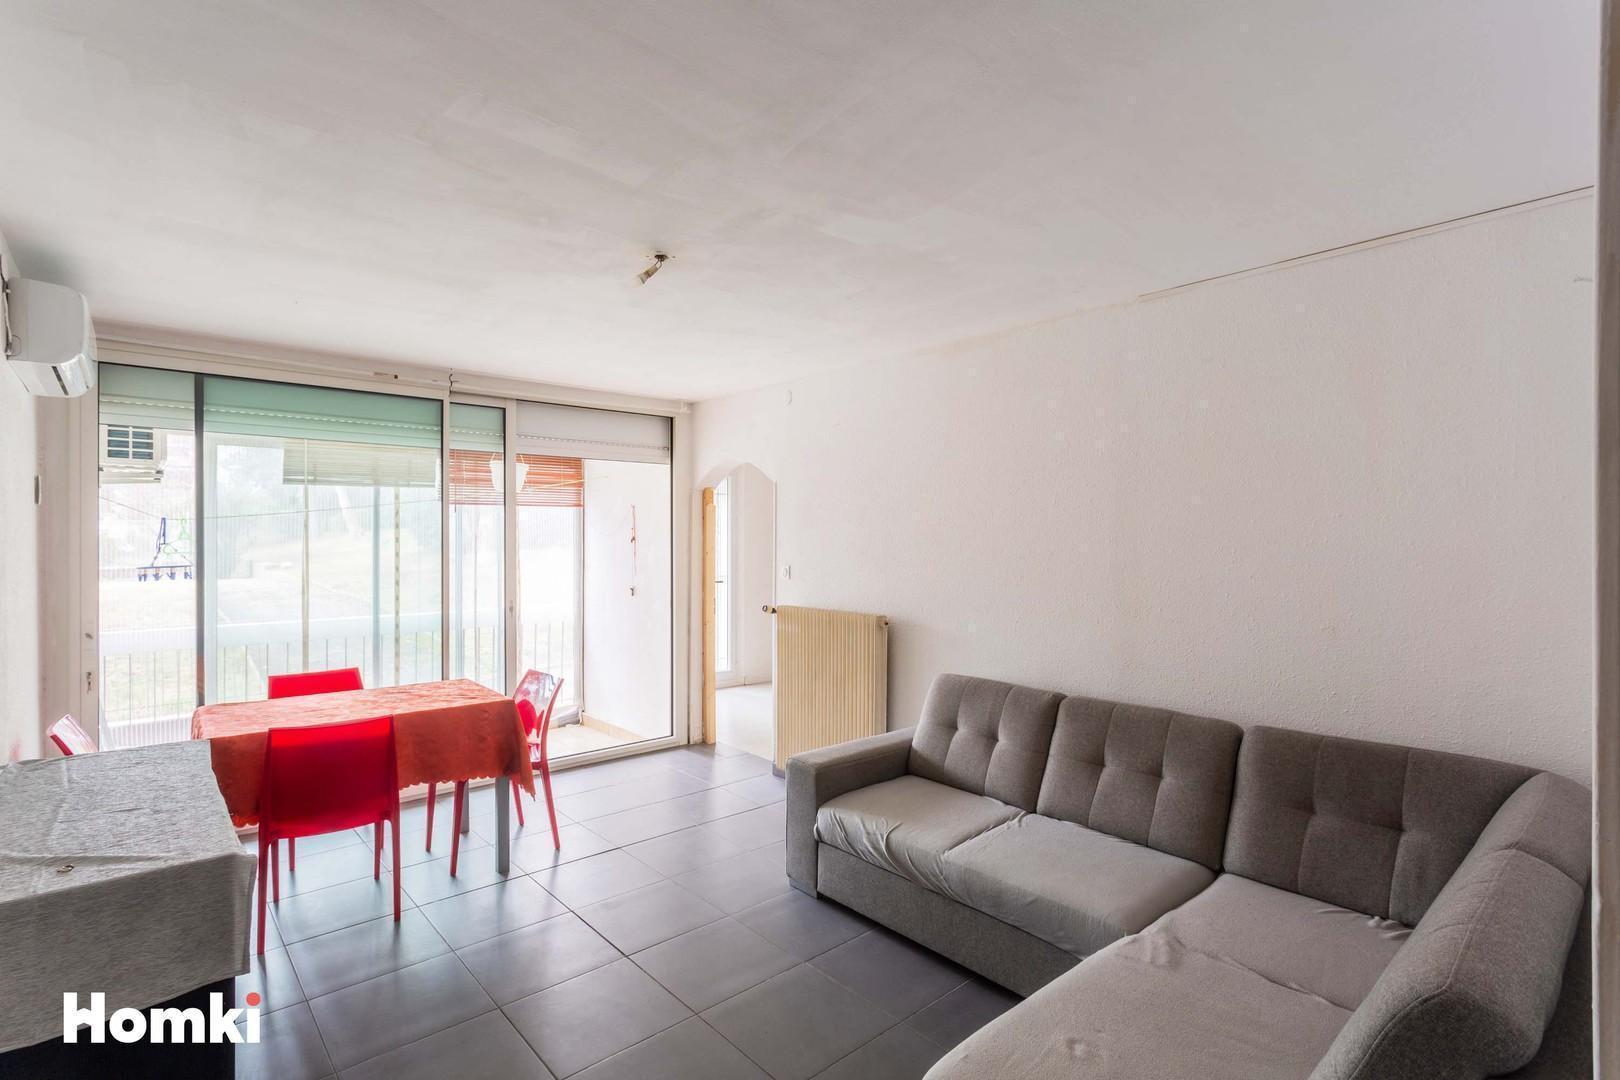 Homki - Vente Appartement  de 90.0 m² à Nîmes 30900